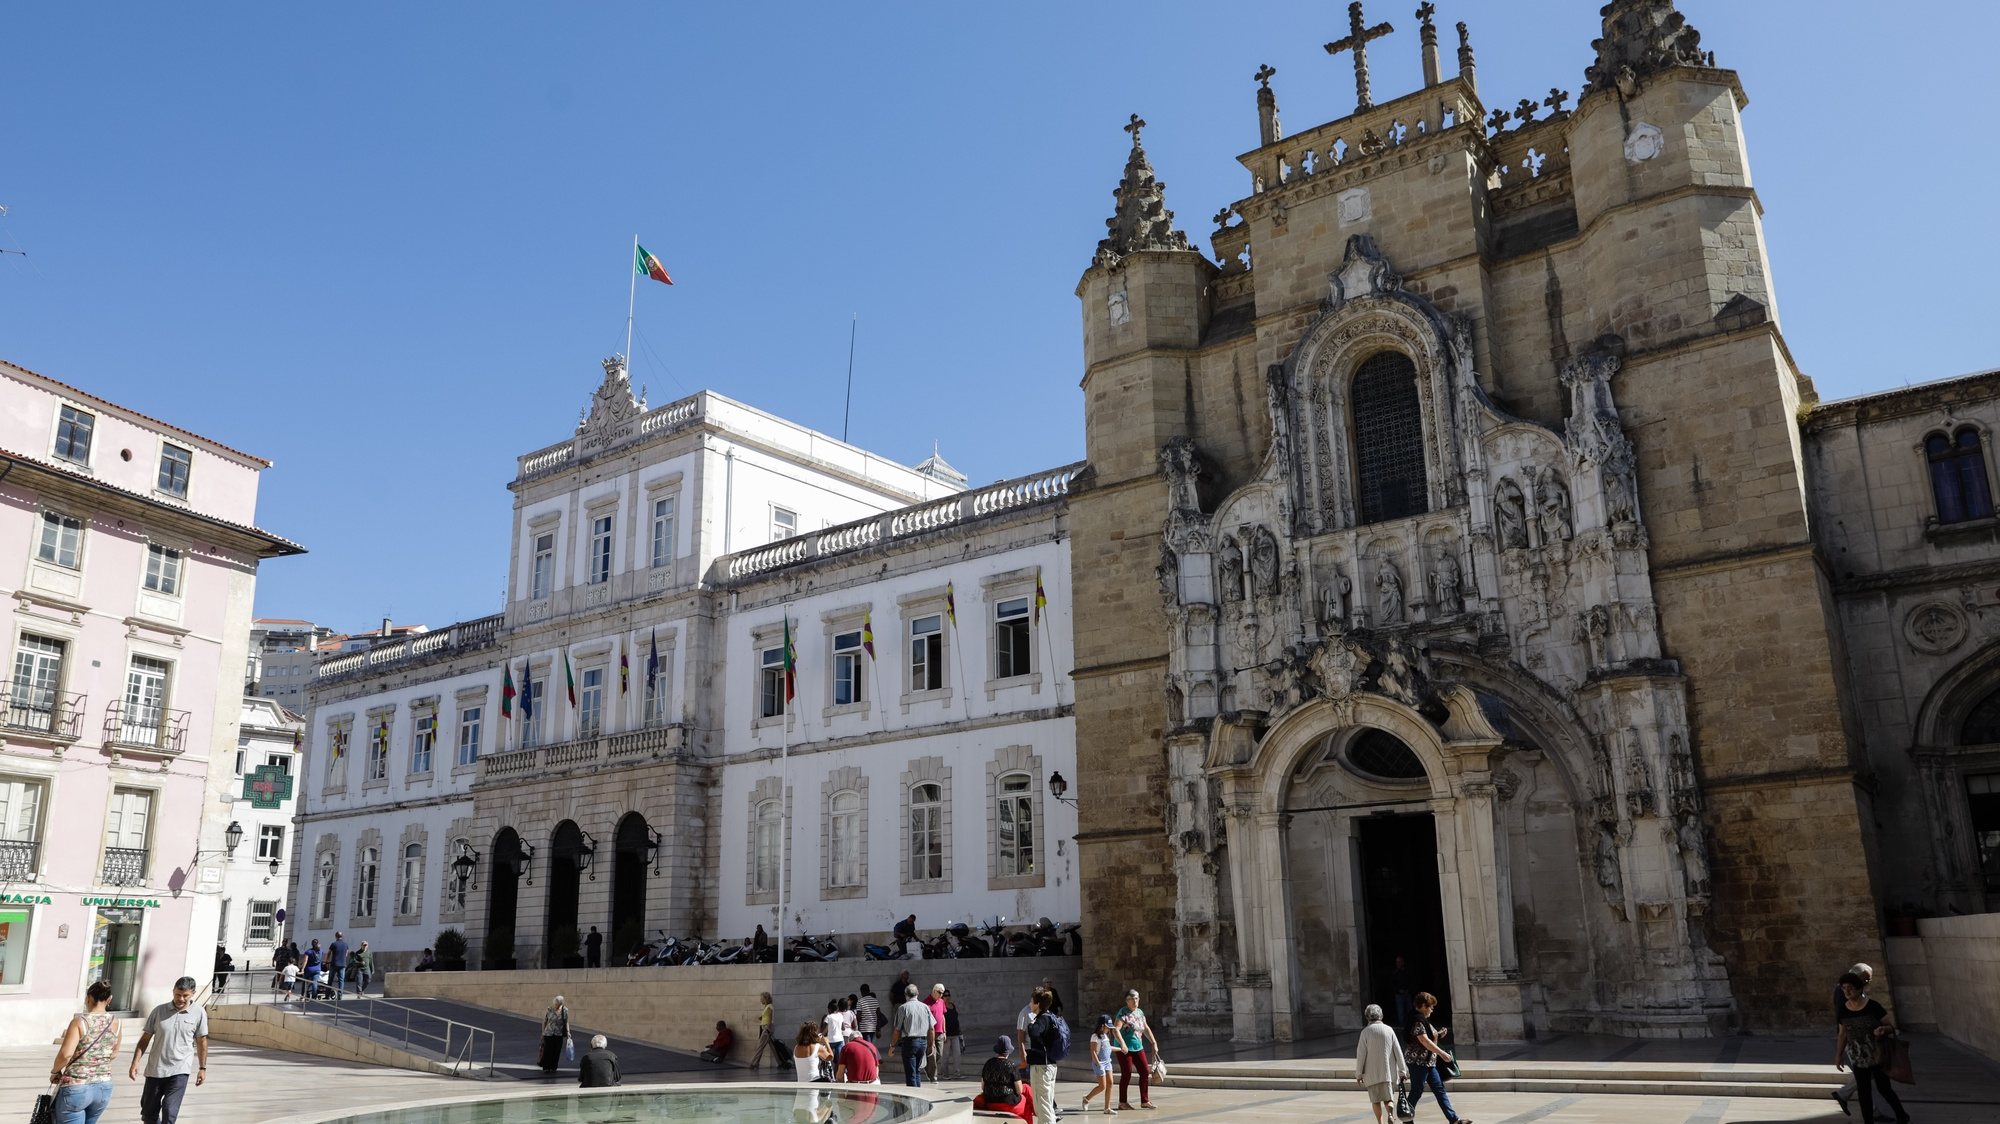 Edifício da Câmara Municipal de coimbra e Igreja de Santa Cruz, em Coimbra 12 de setembro de 2017. PAULO NOVAIS/LUSA